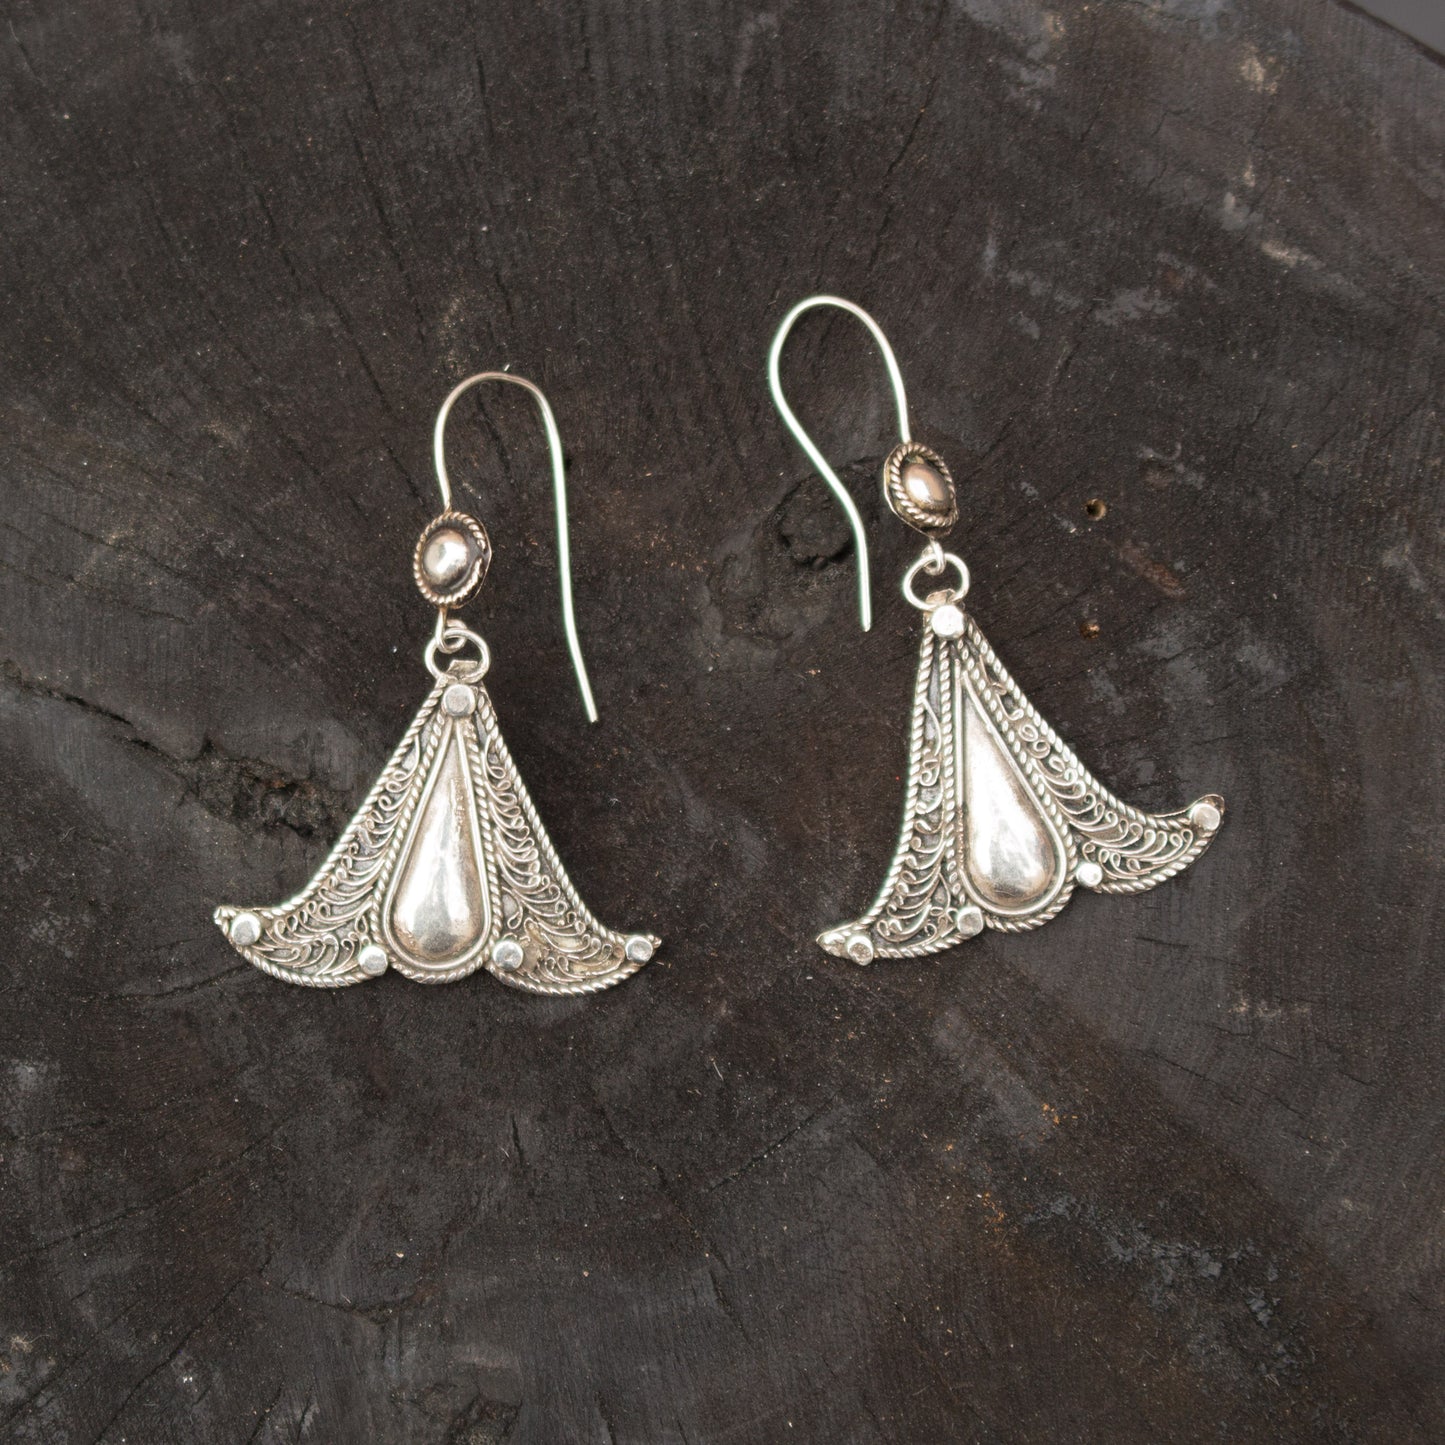 Silver Filigree earrings